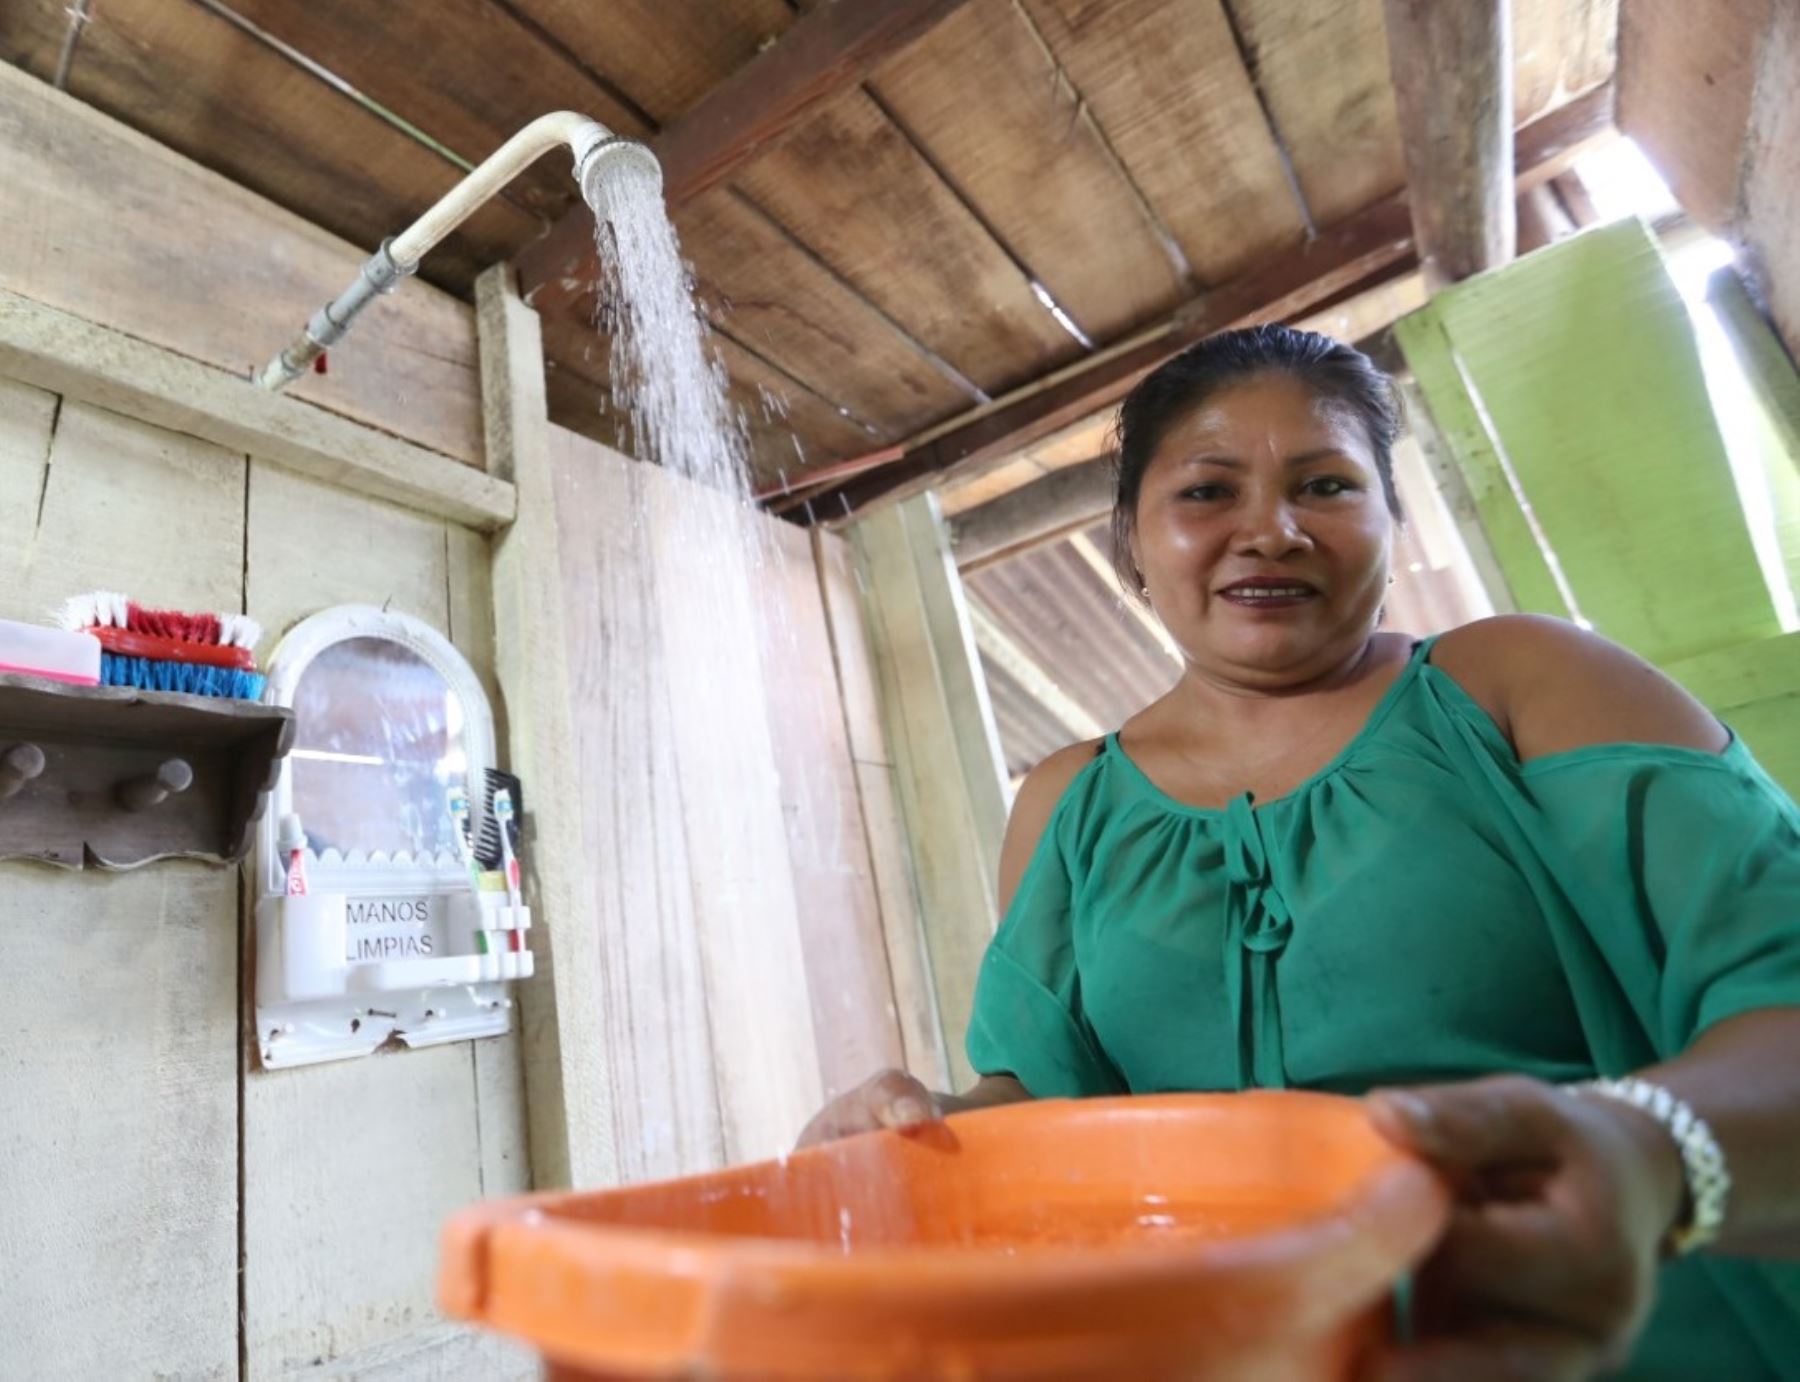 Proyecto de agua potable beneficiará a más de 2,300 pobladores del distrito de Laberinto, en Madre de Dios. Los trabajos estarán concluidos en febrero próximo, informó el Ministerio de Vivienda.